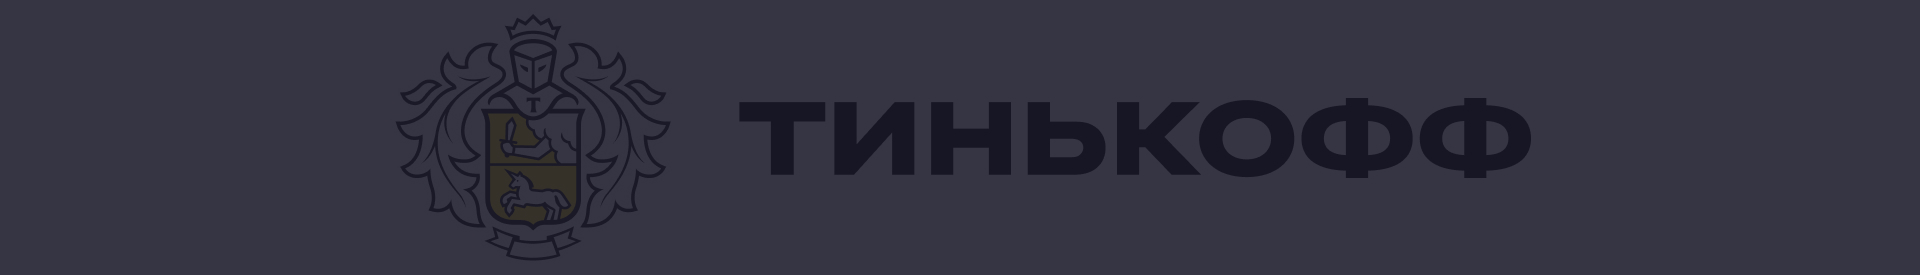 Акции и спецпредложения в банке Тинькофф в Челябинске